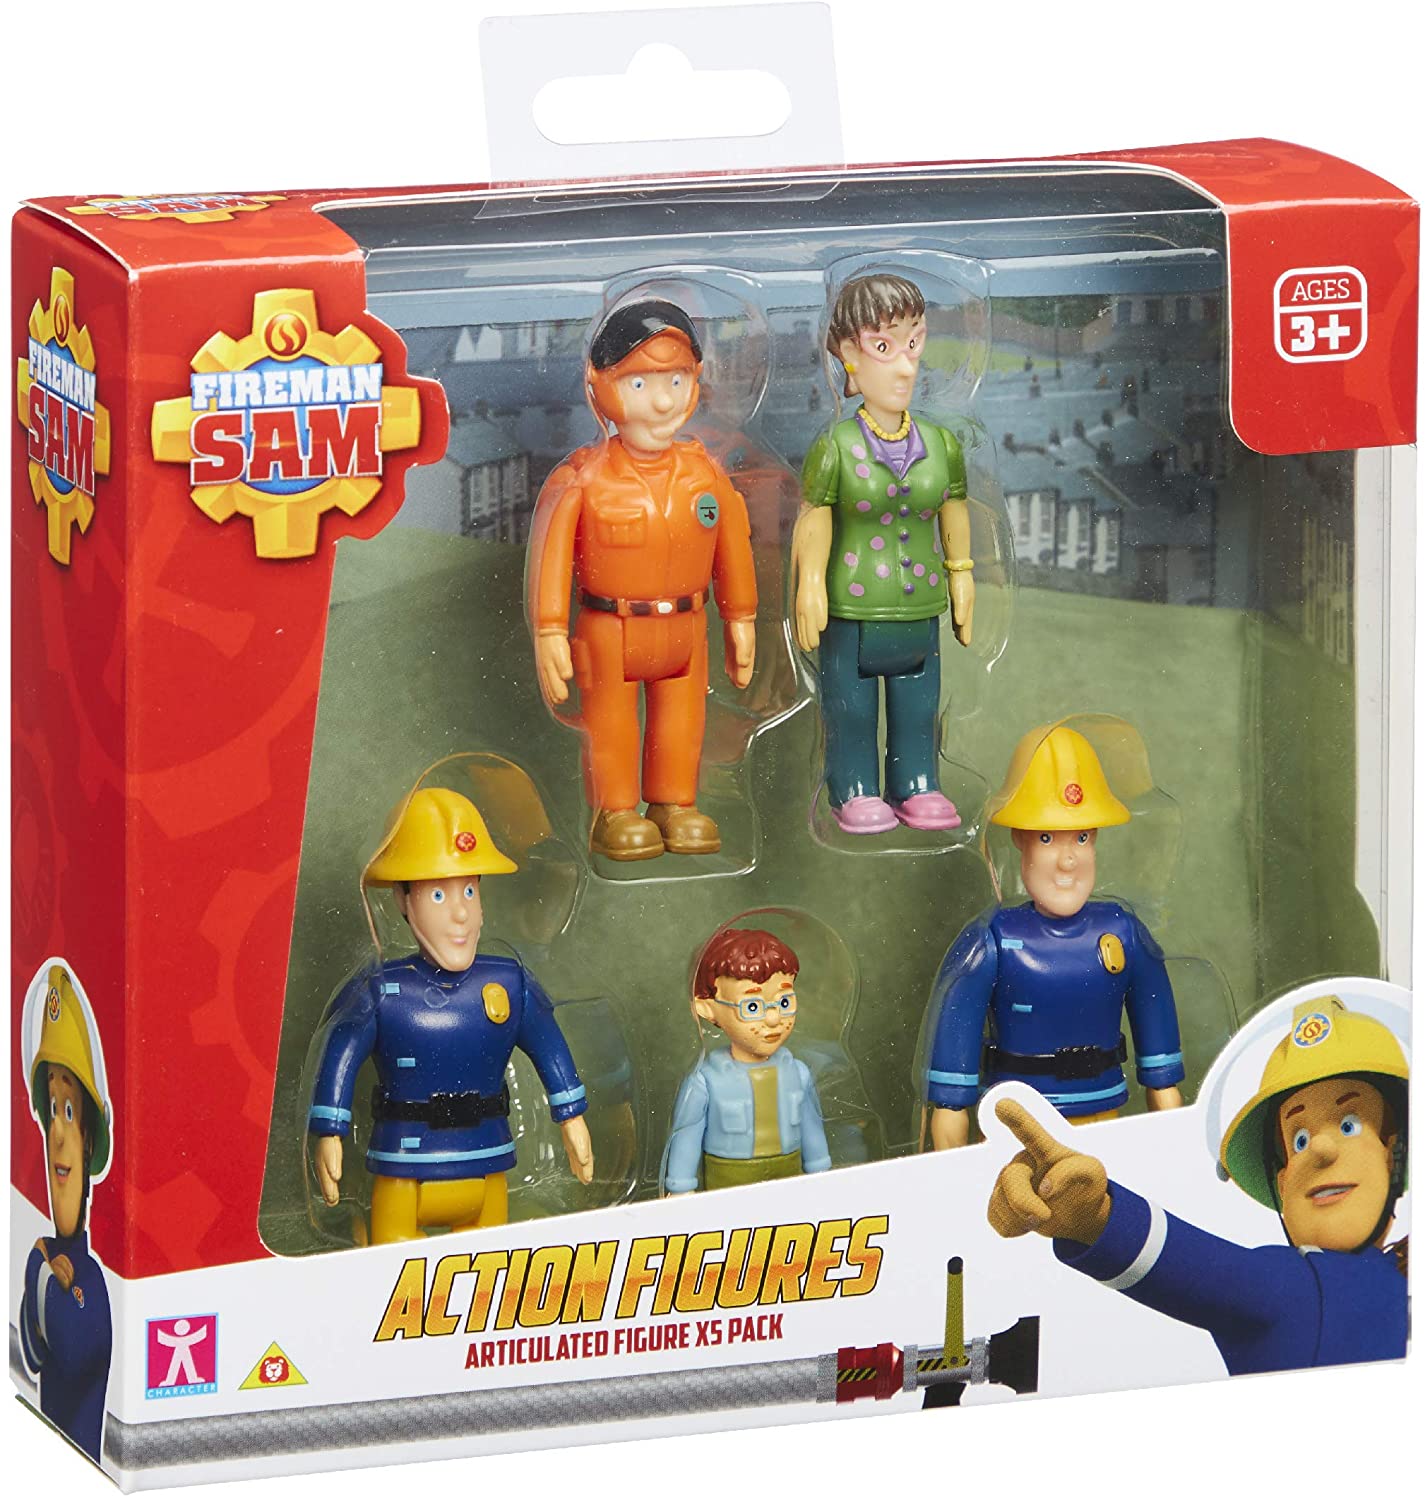 Fireman Sam Five Fig Pack